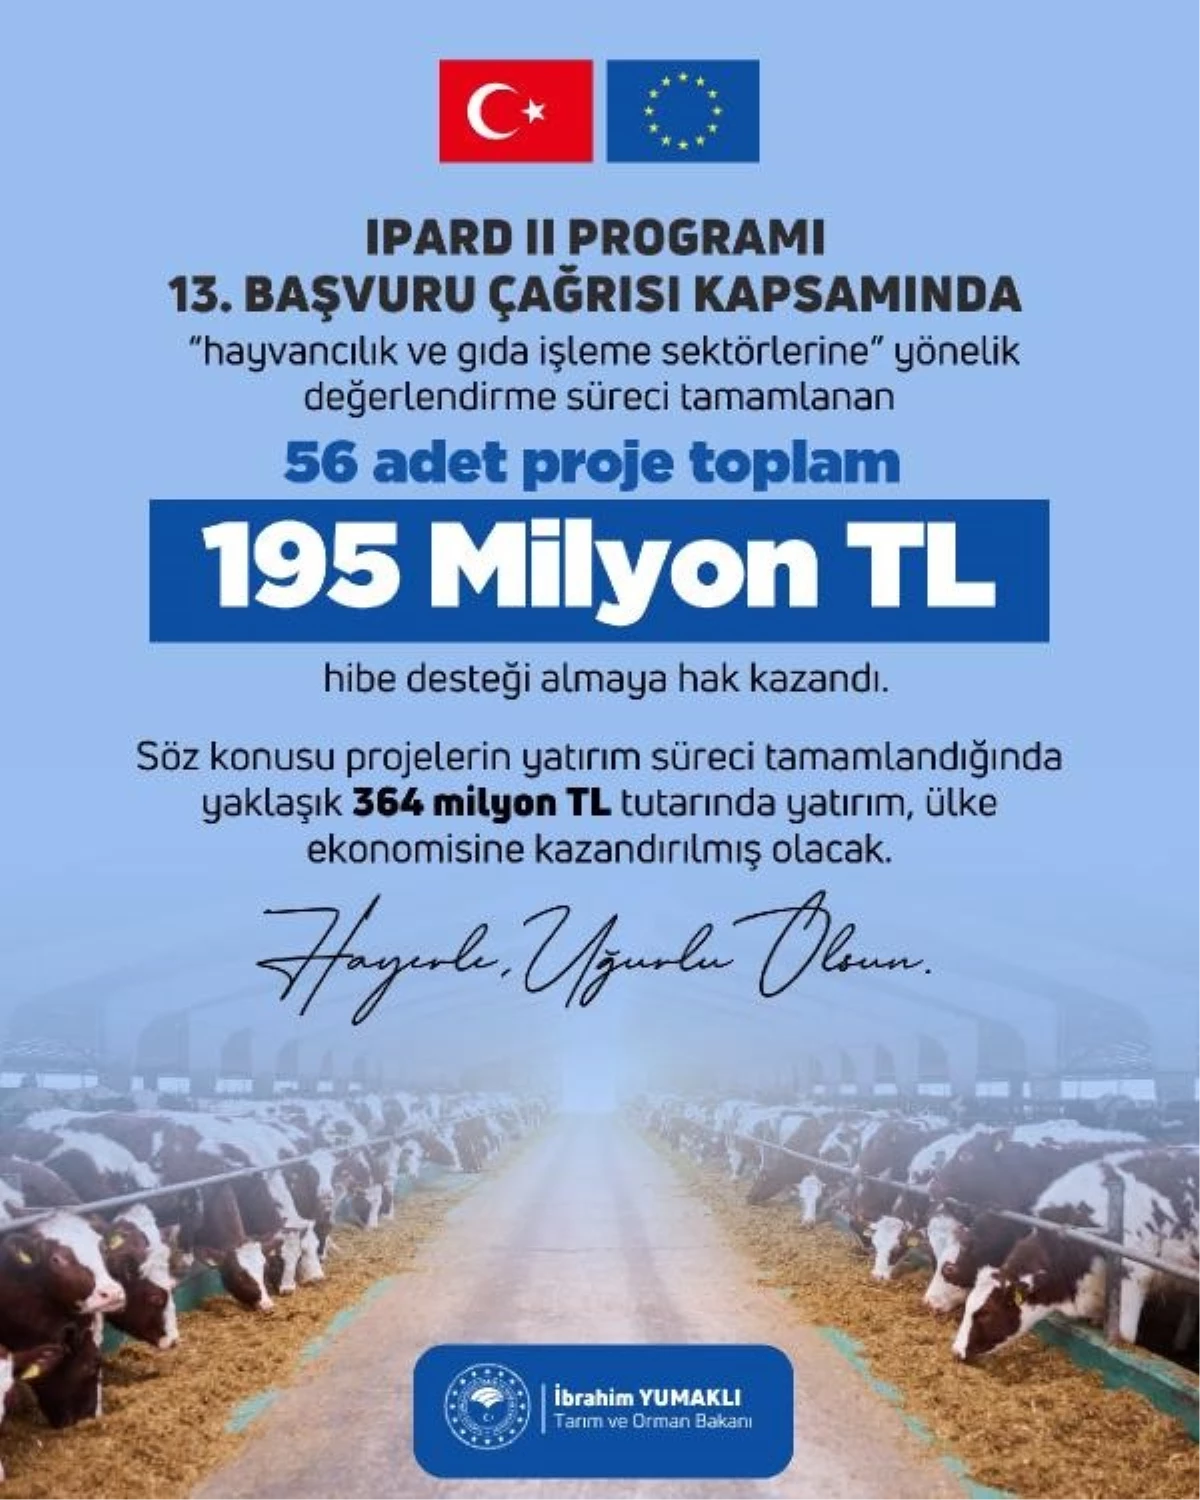 IPARD-II Programı kapsamında hayvancılık ve gıda işleme sektörlerine 195 milyon TL hibe desteği sağlanacak